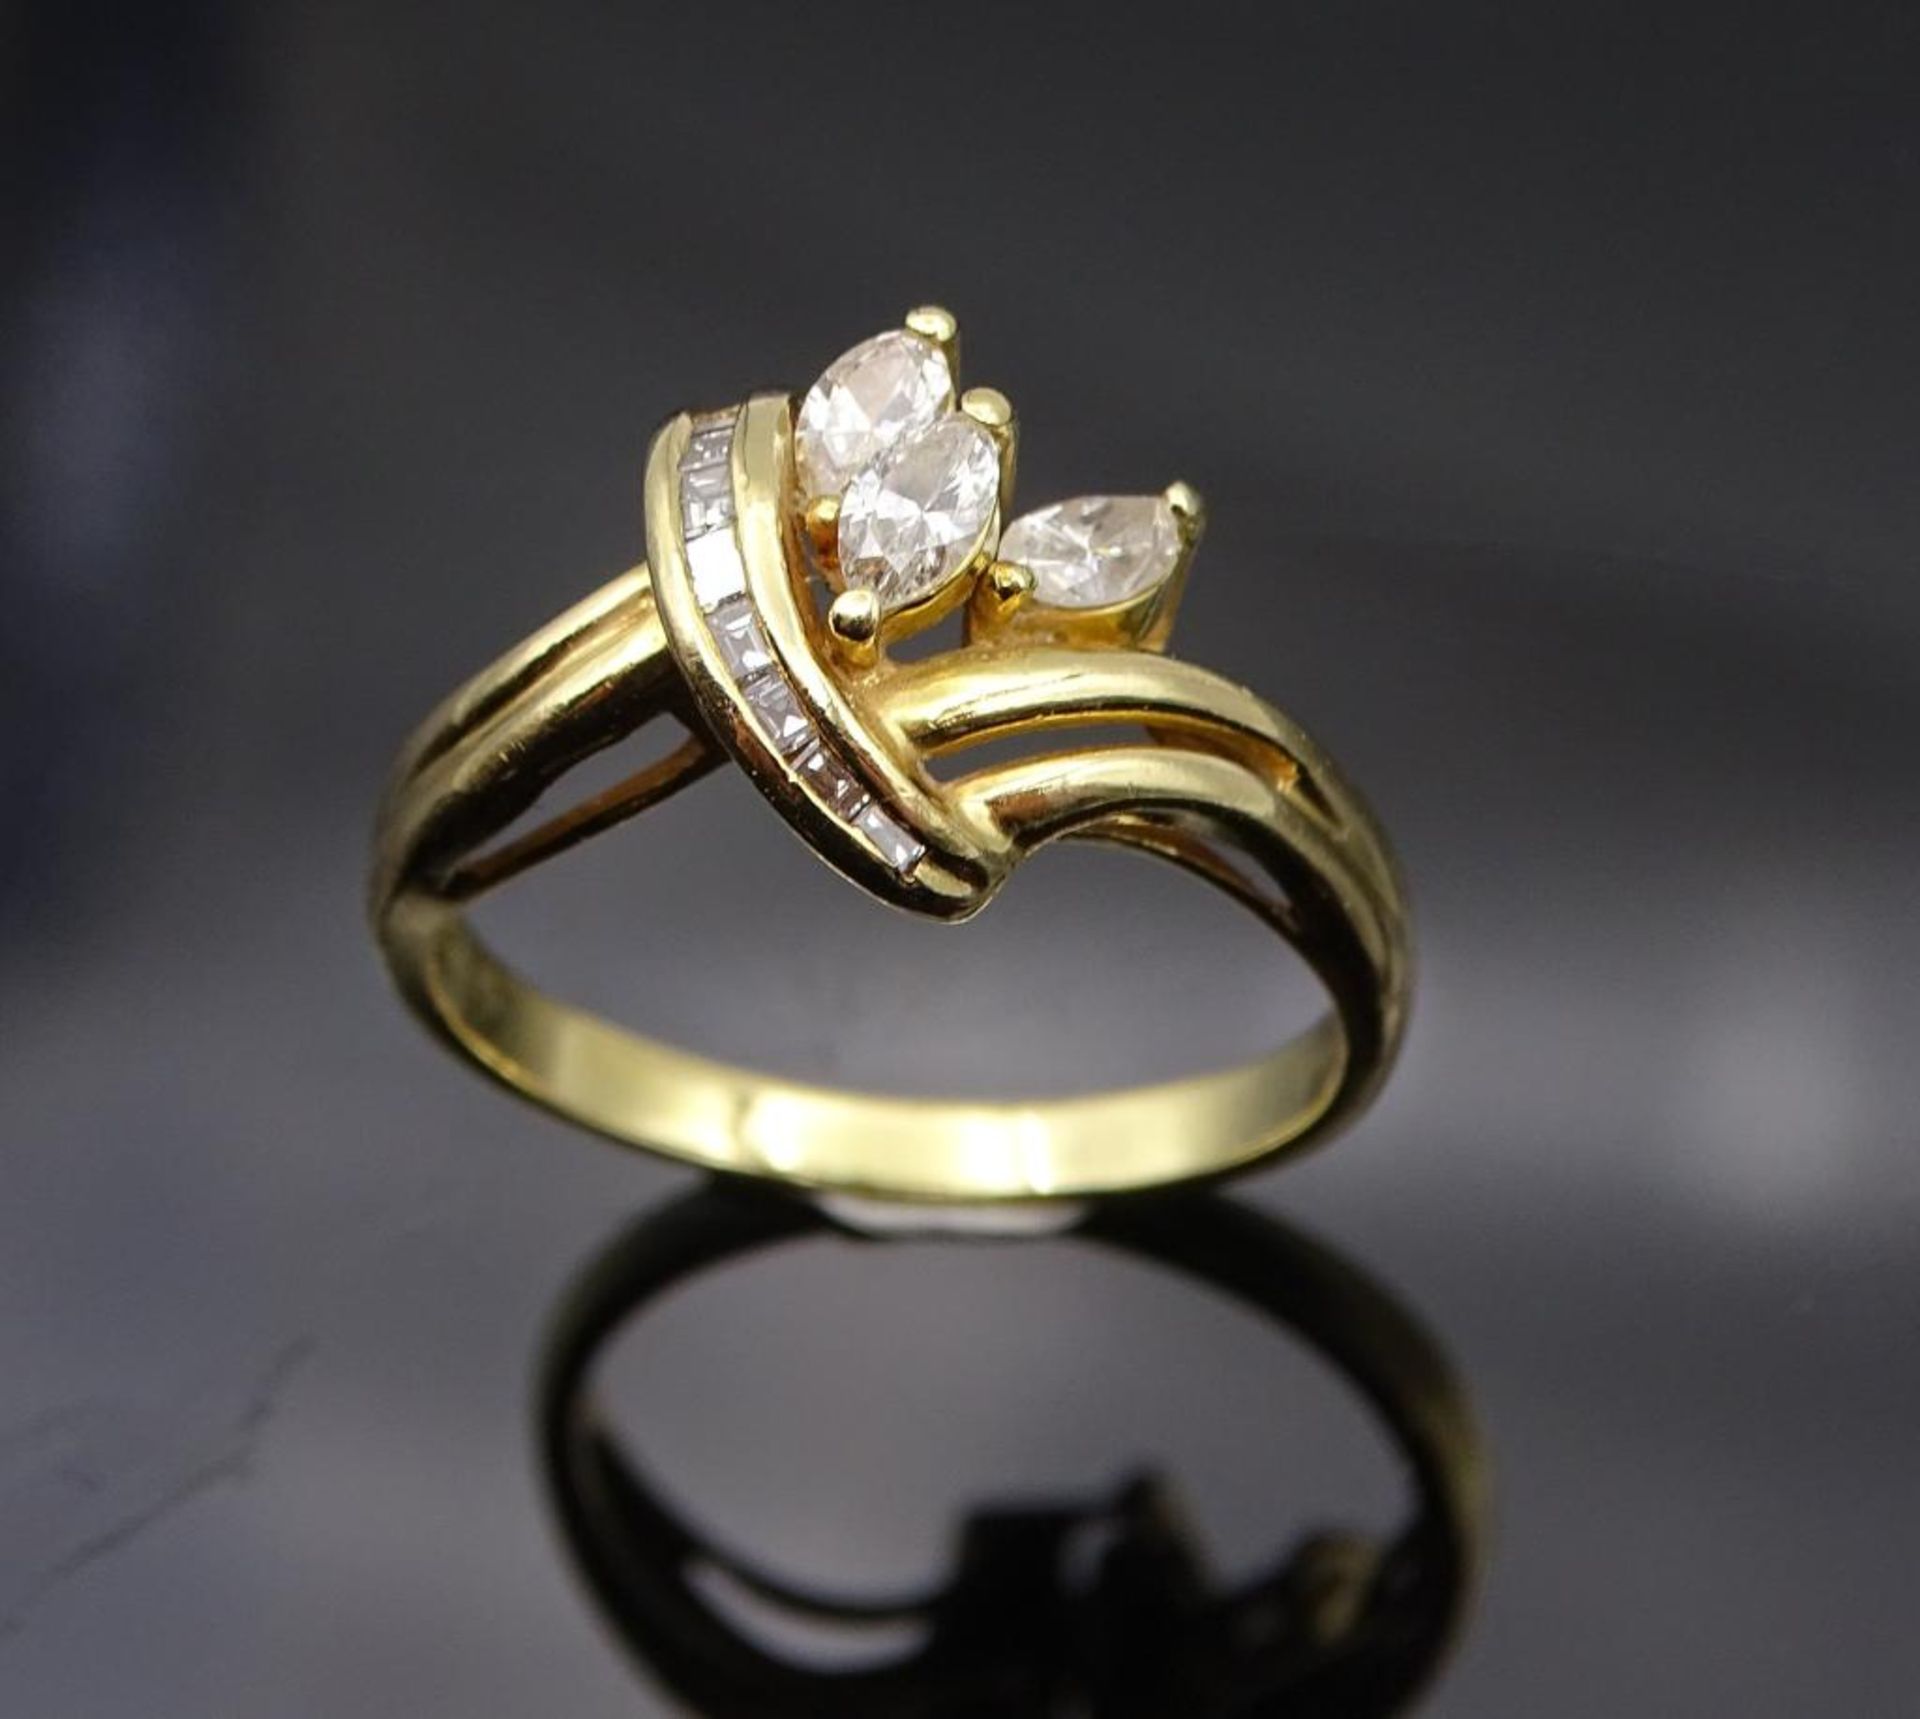 Diamant-Goldring in 750er Gelbgold, 3 Navette Diamanten W/si 1 zus. 0,39ct., + 8 Rohdiamanten W/si 1 - Bild 4 aus 7